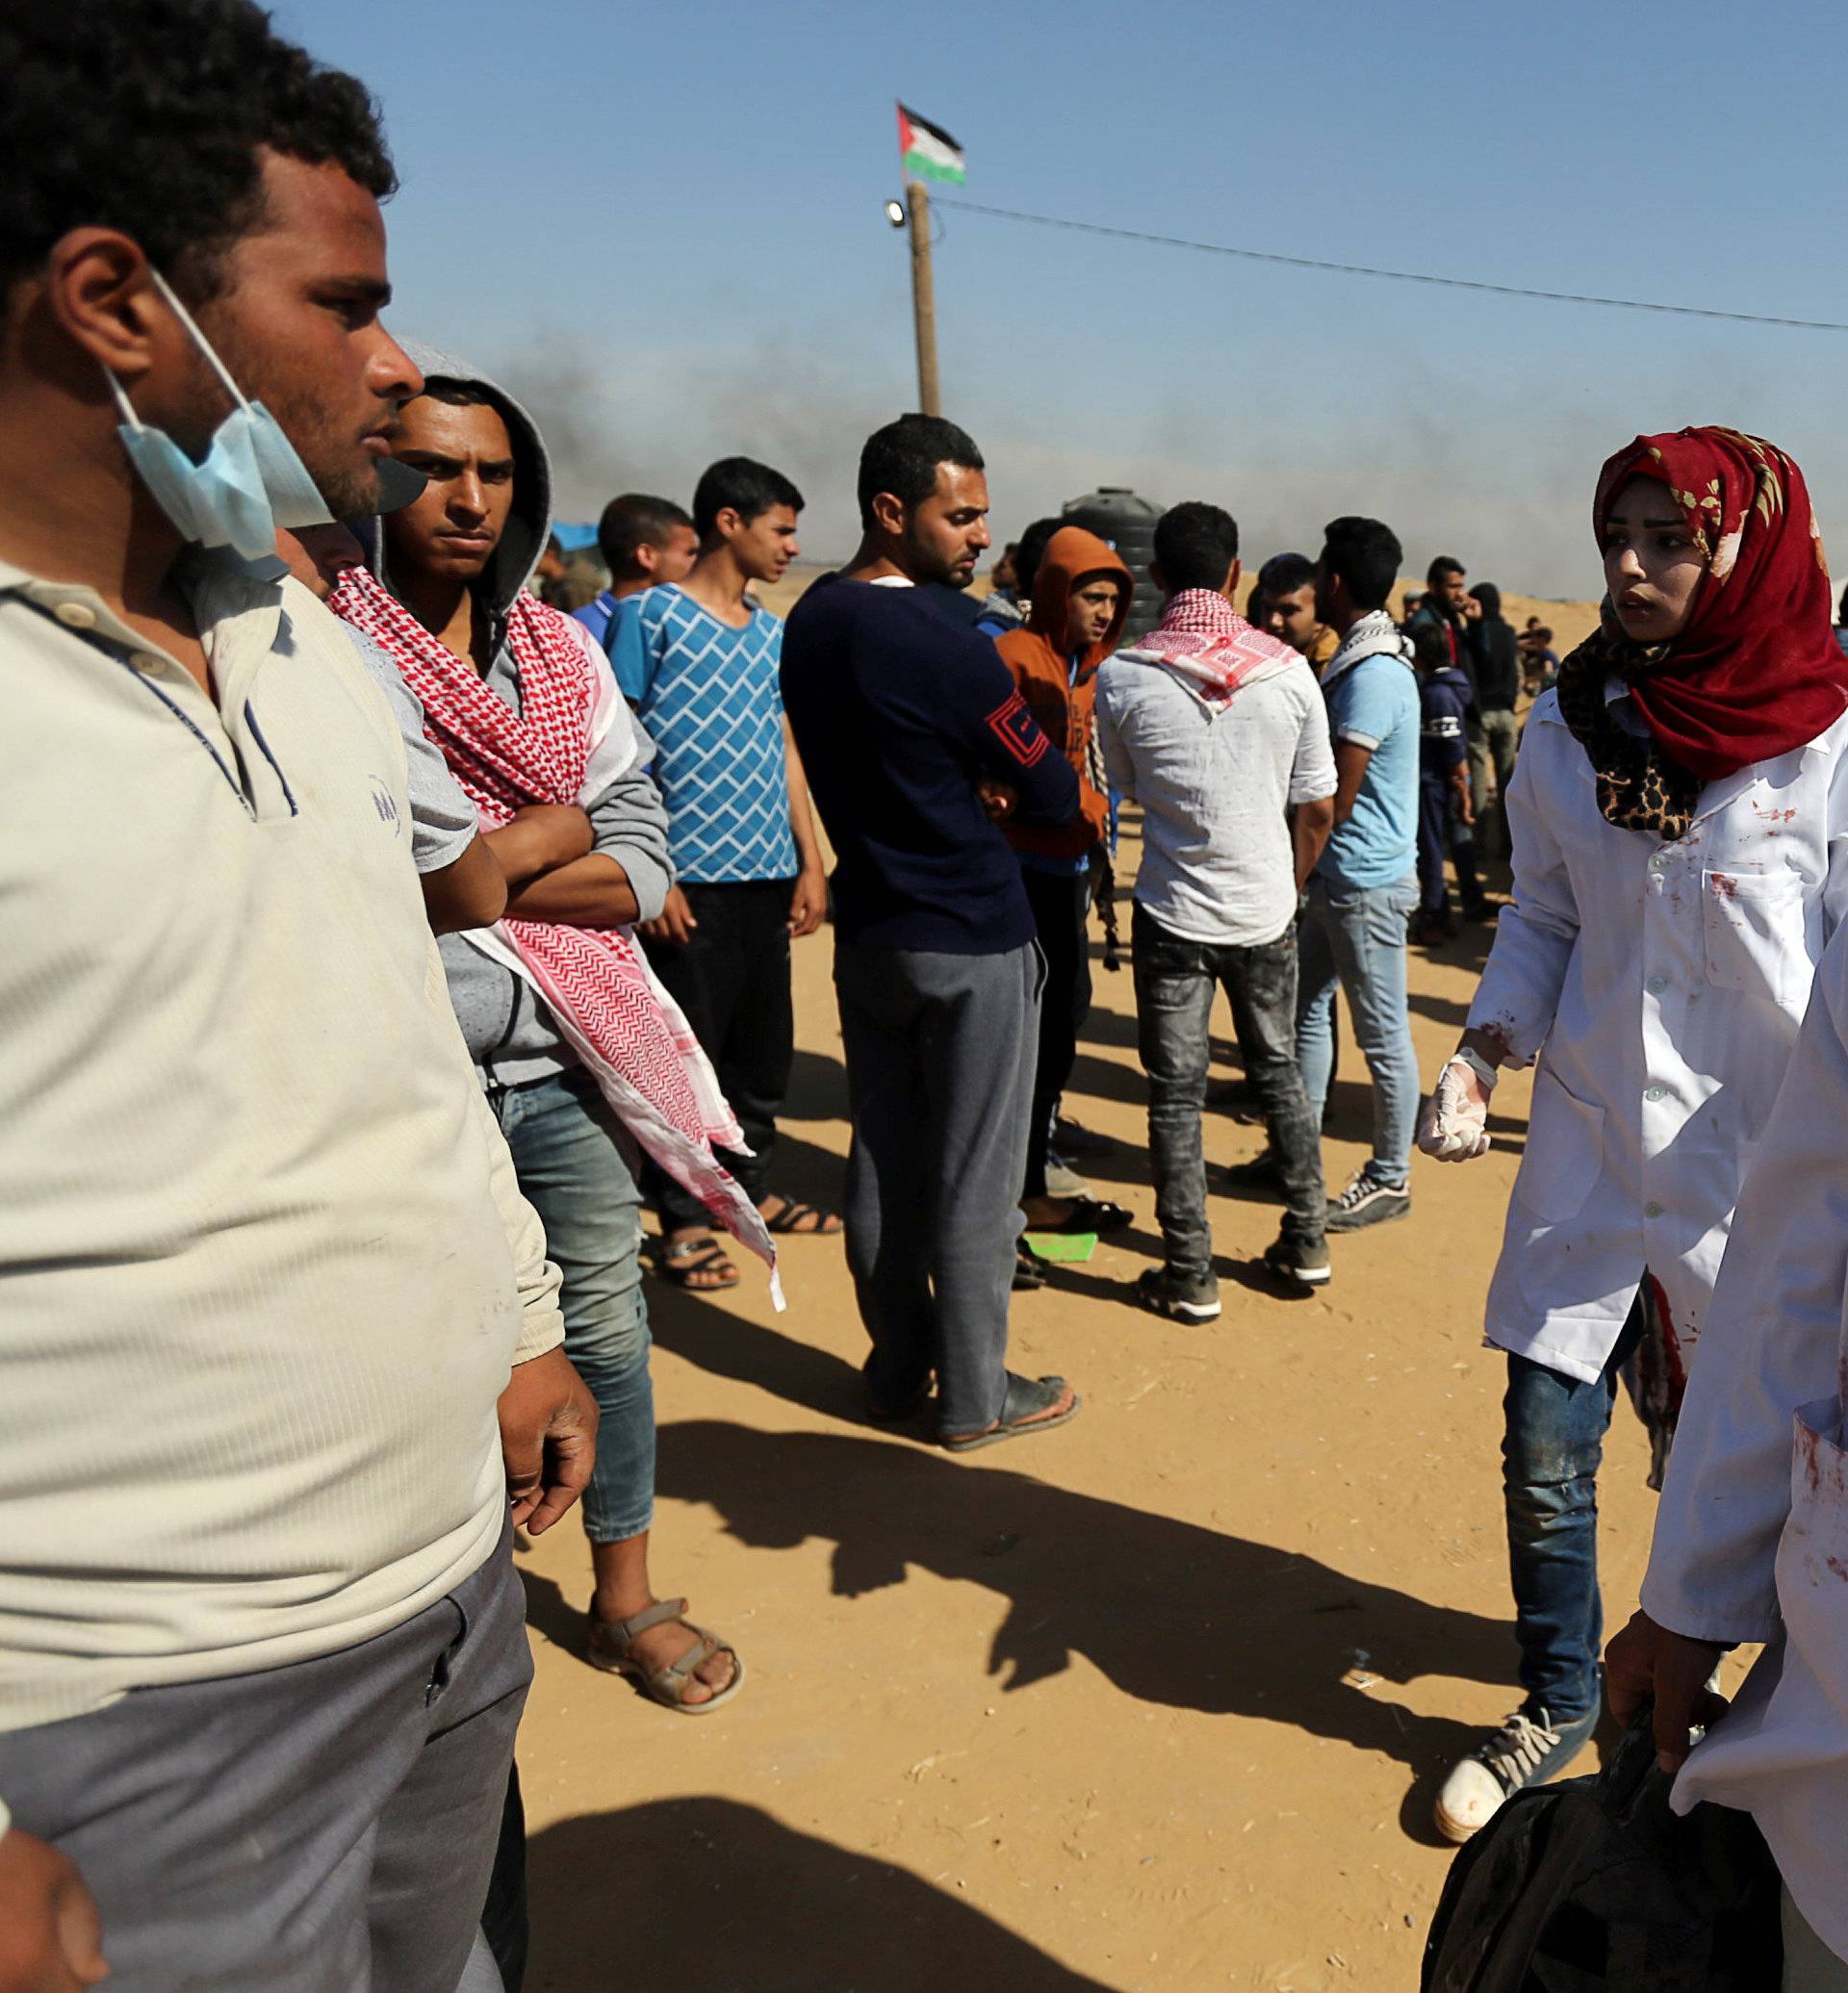 Female Palestinian medic Razan Al-Najar works at the scene of clashes at Israel-Gaza border, in the southern Gaza Strip